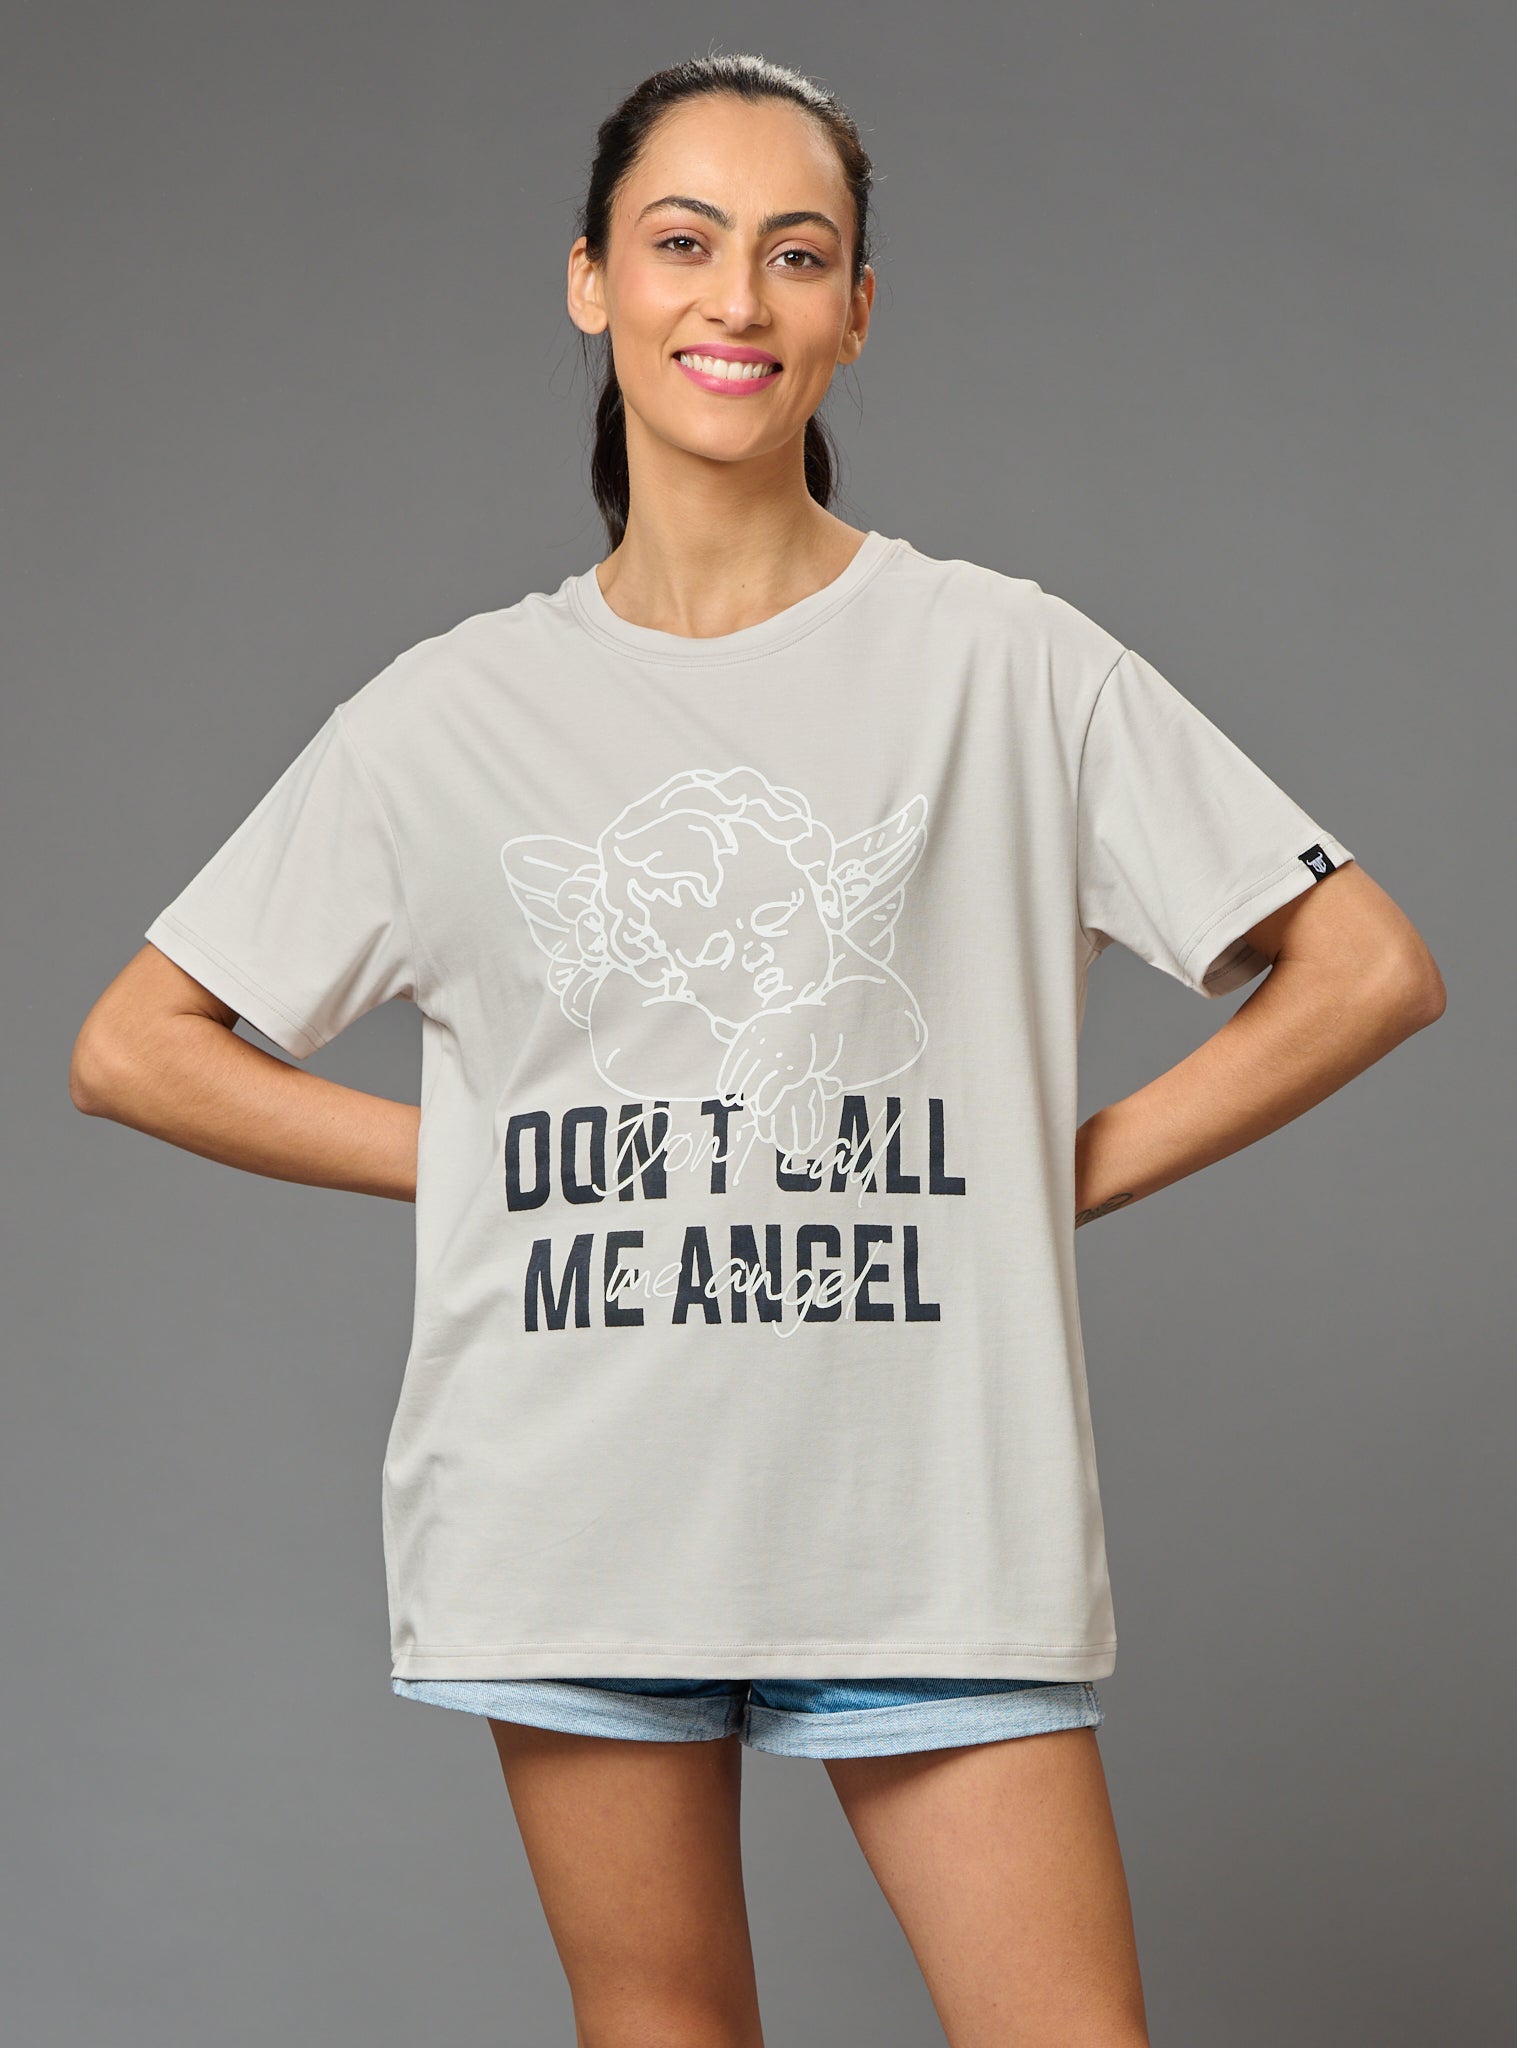 Don't Call me Angel Printed White Oversized T-Shirt for Women - Go Devil